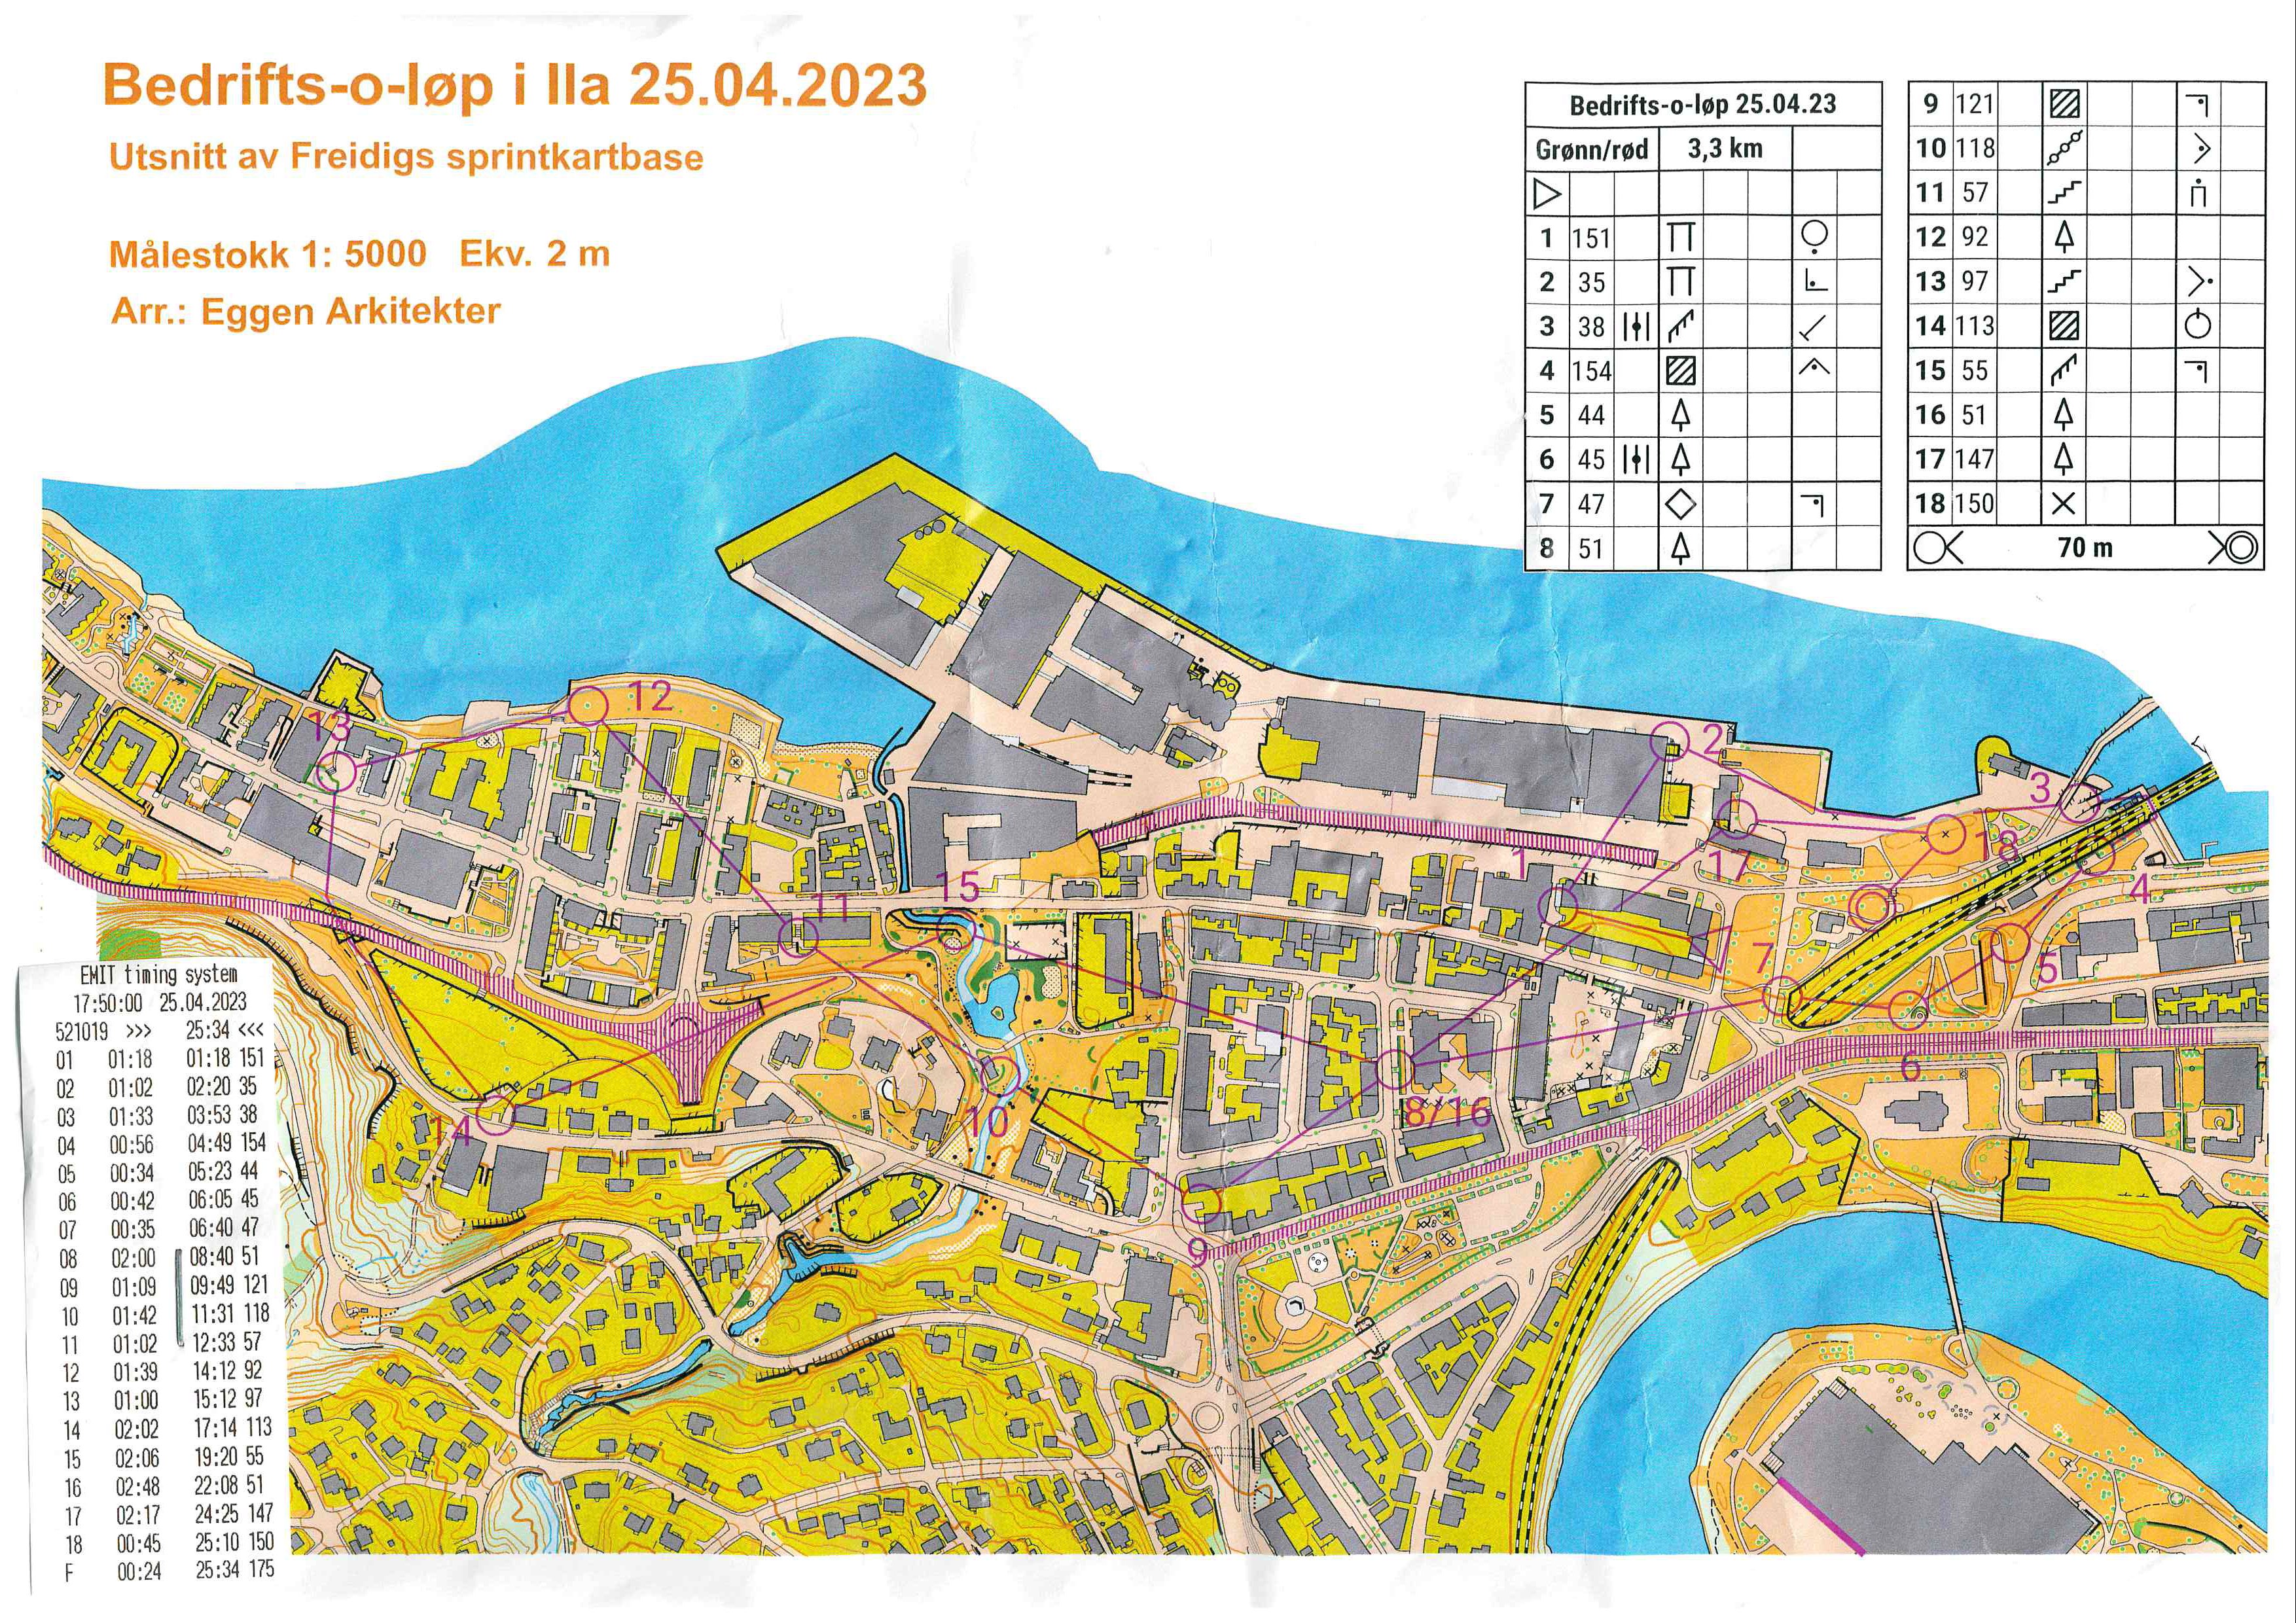 Bedrifts-o-løp, sprint, Skansen (25-04-2023)